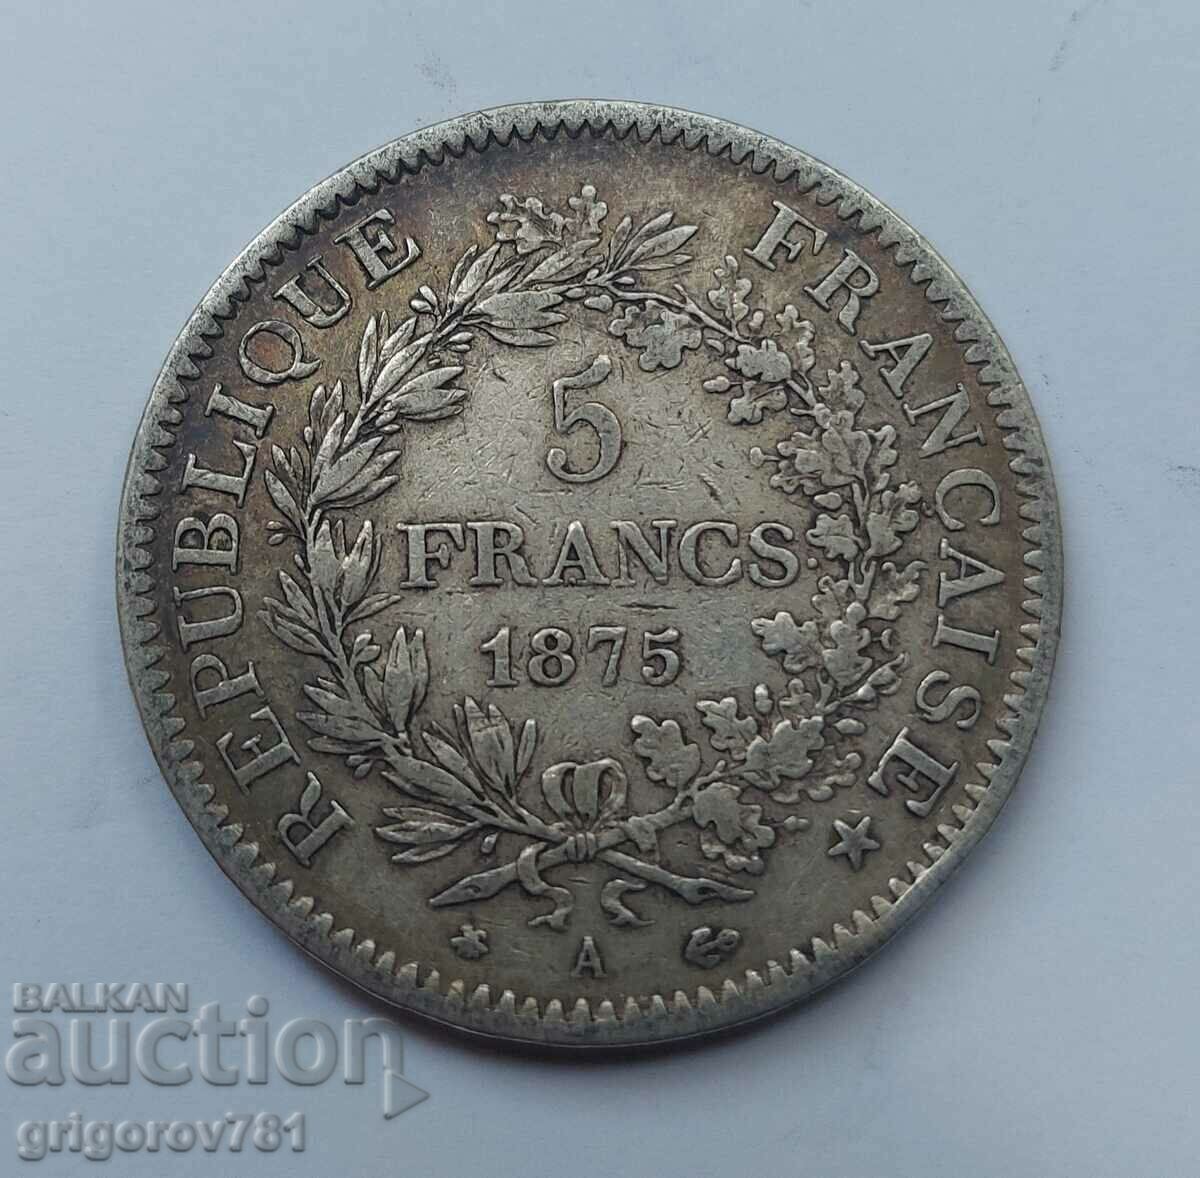 5 Franci Argint Franta 1875 A - Moneda de argint #243